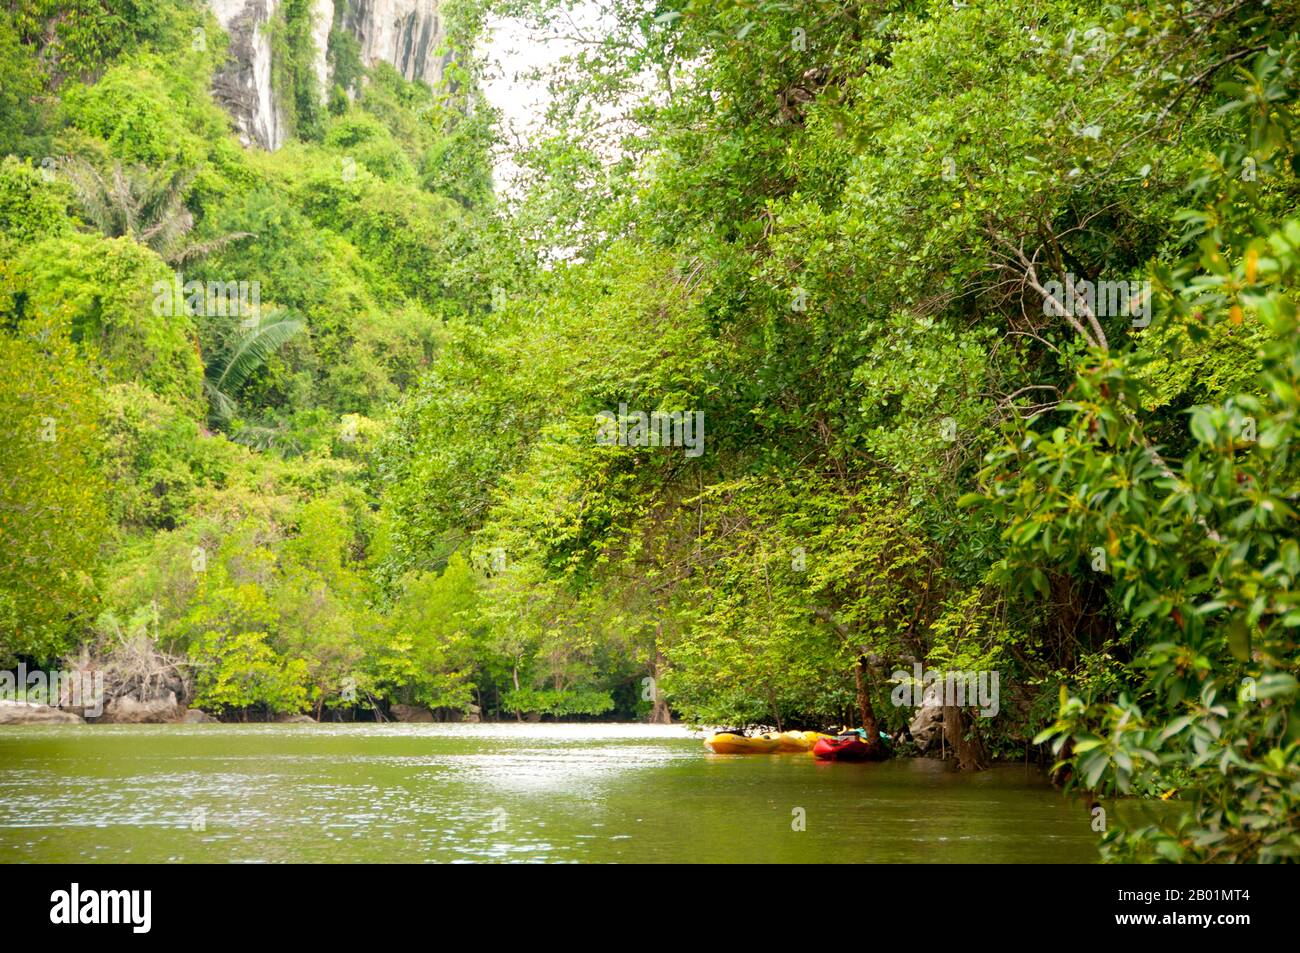 Thailandia: Kayak nelle mangrovie, oltre al parco nazionale di Bokkharani, provincia di Krabi. Il Parco Nazionale di Than Bokkharani si trova nella provincia di Krabi a circa 45 chilometri (28 miglia) a nord-ovest della città di Krabi. Il parco copre un'area di 121 chilometri quadrati (47 miglia quadrate) ed è caratterizzato da una serie di affioramenti calcarei, foreste pluviali sempreverdi, foreste di mangrovie, torbiere e molte isole. Ci sono anche numerose grotte e complessi rupestri con alcune spettacolari stalagmiti e stalattiti. Il Bokkharani è incentrato su due famose grotte, Tham Lot e Tham Phi Hua. Foto Stock